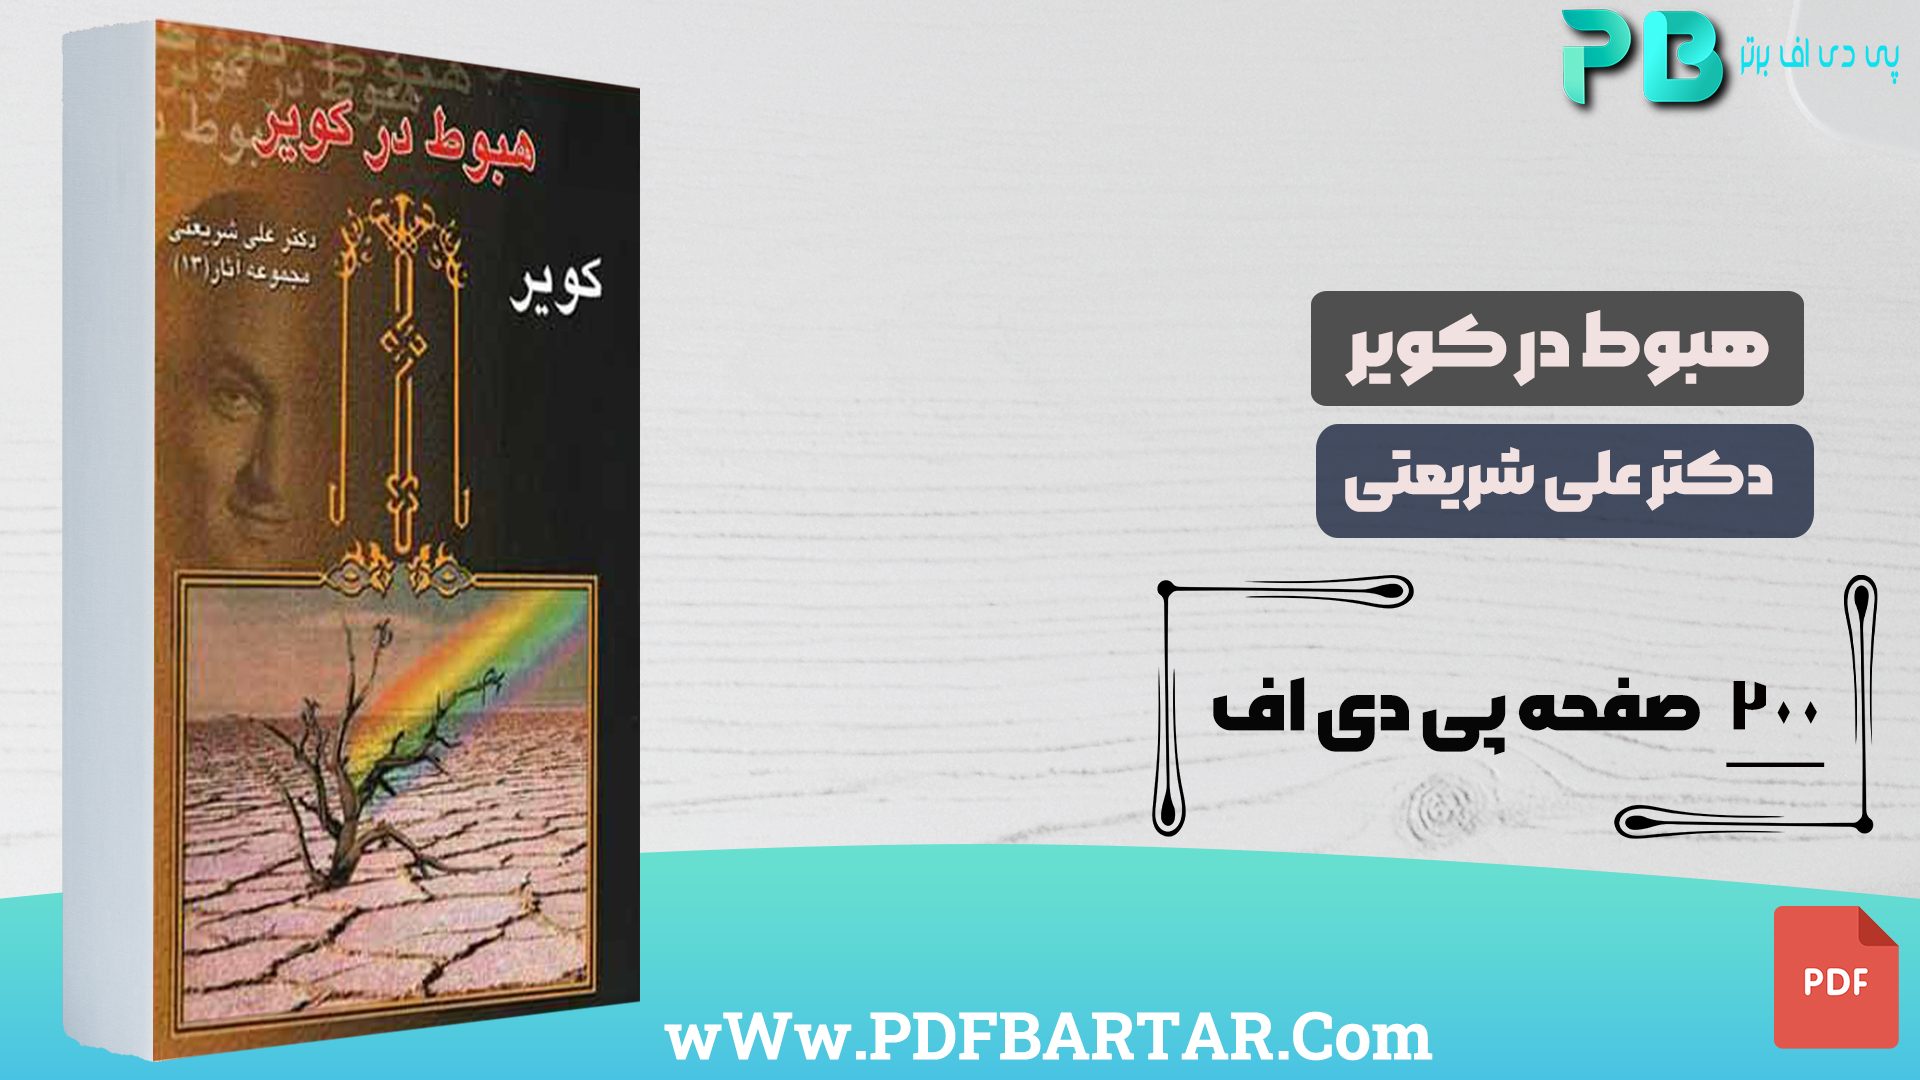 دانلود پی دی اف کتاب هبوط در کویر دکتر علی شریعتی PDF- پی دی اف برتر